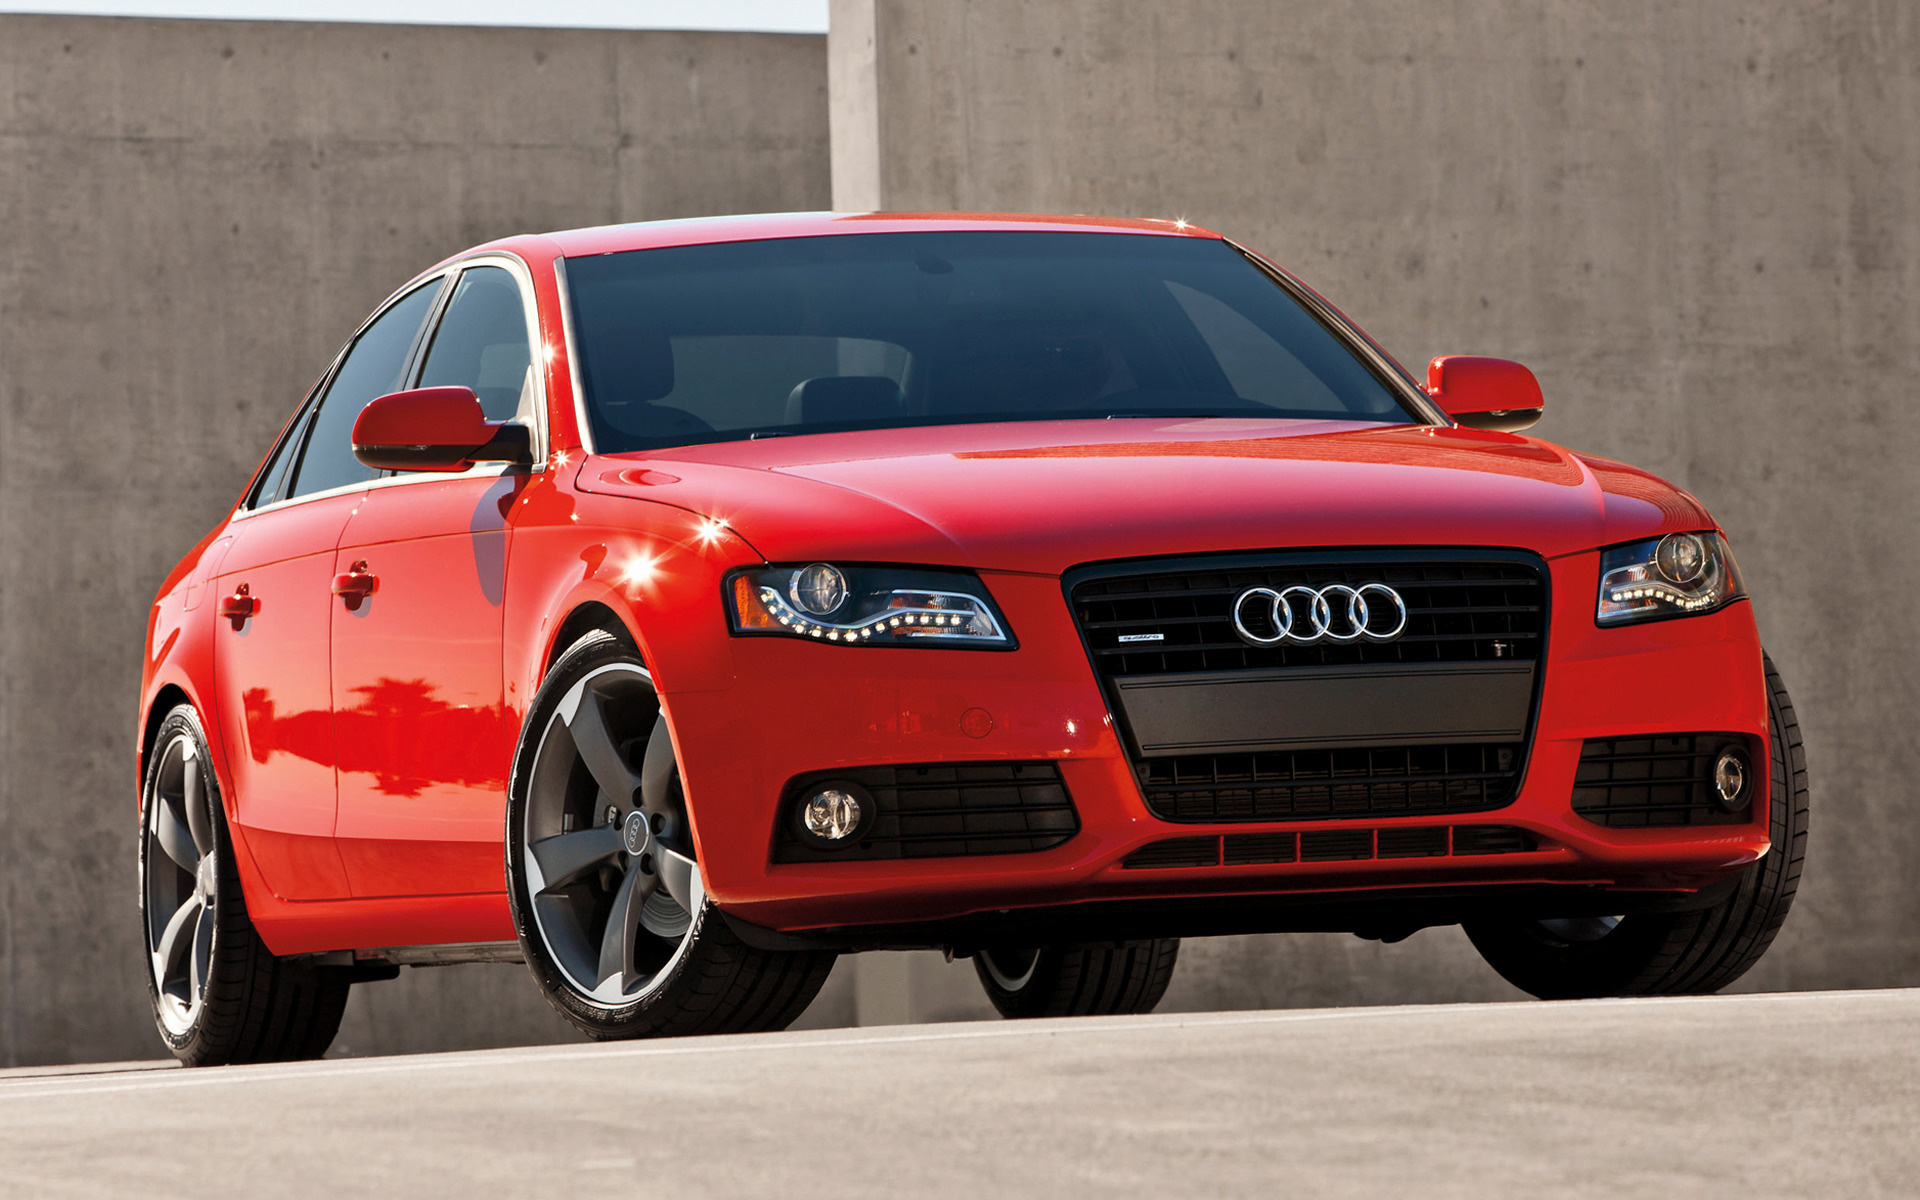 Купить ауди а4 в8. Audi a4. Audi a4 2008 красная. Машина Ауди а4 новая. Audi a4 b8 Red.